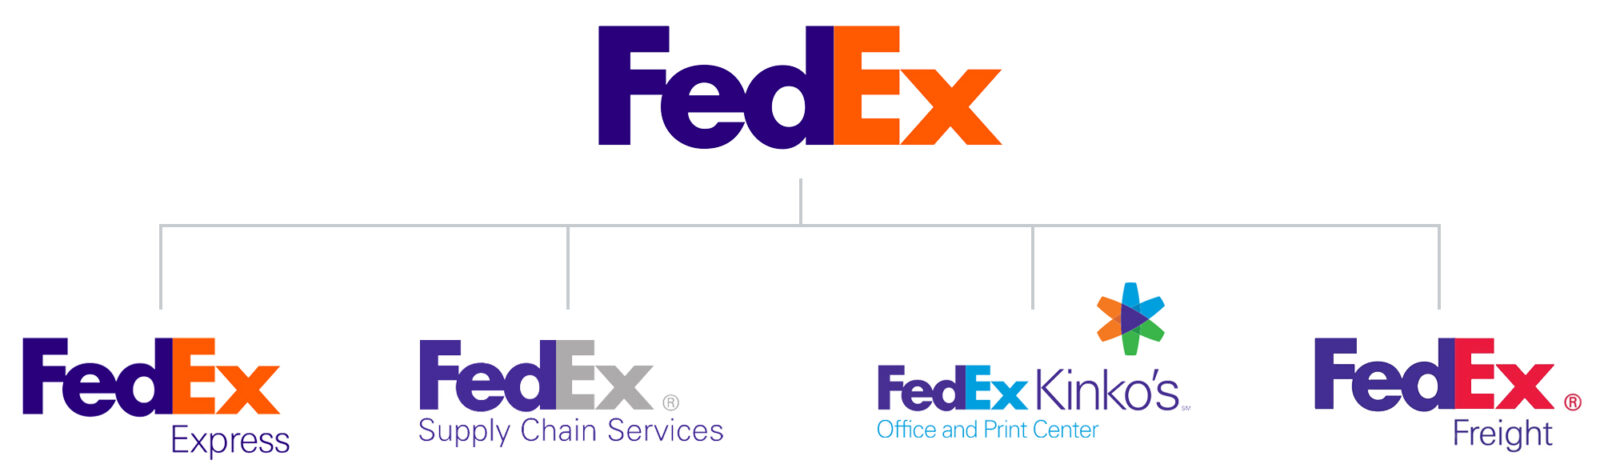 FedEx Brand Architecture Diagram